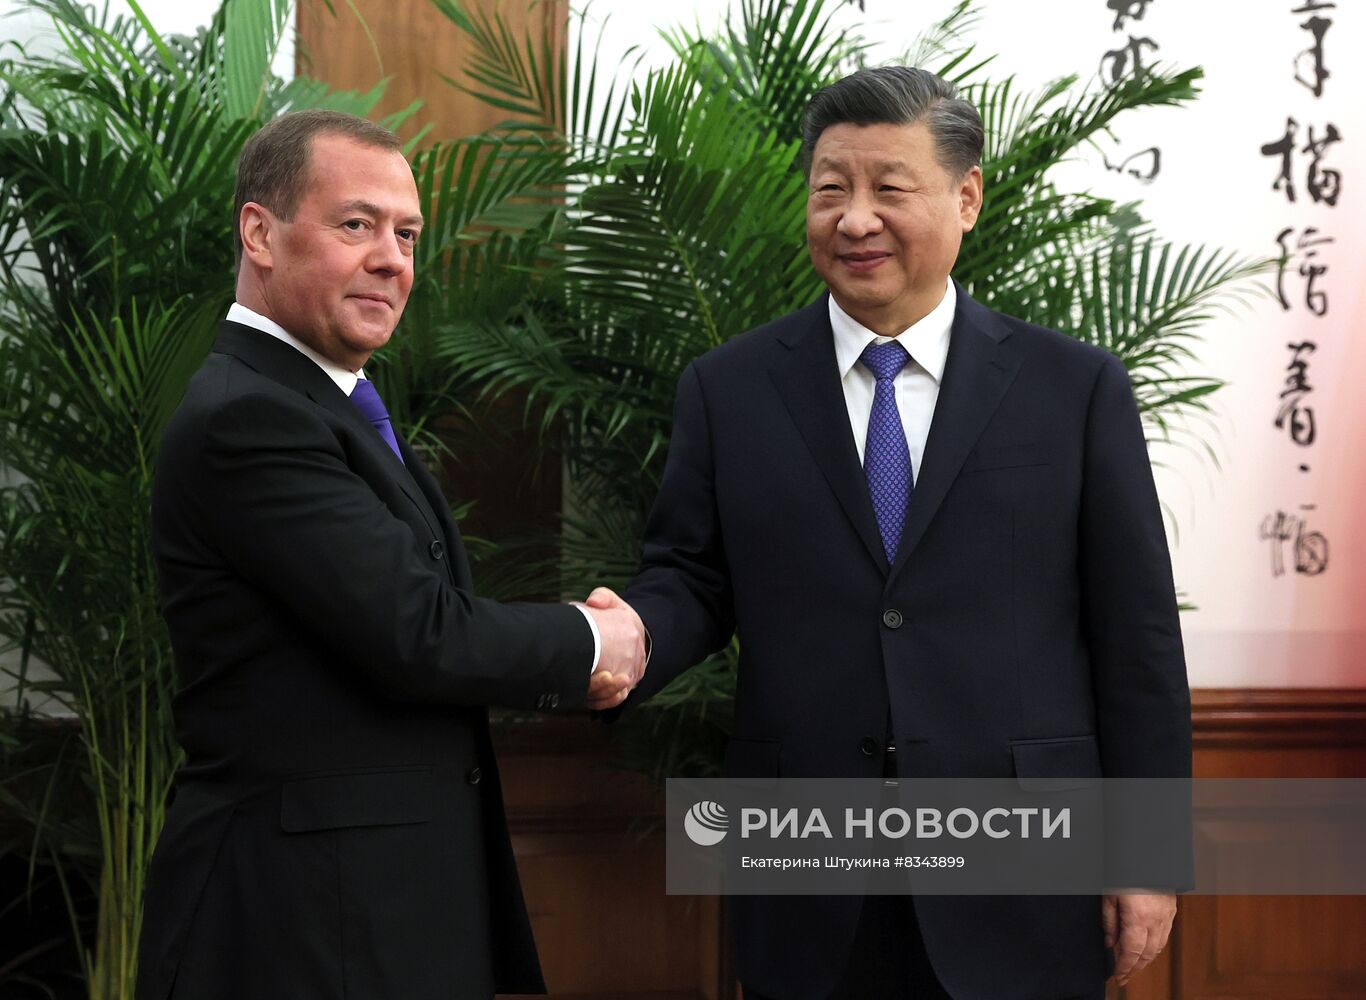 Официальный визит зампреда Совбеза РФ Д. Медведева в Китай